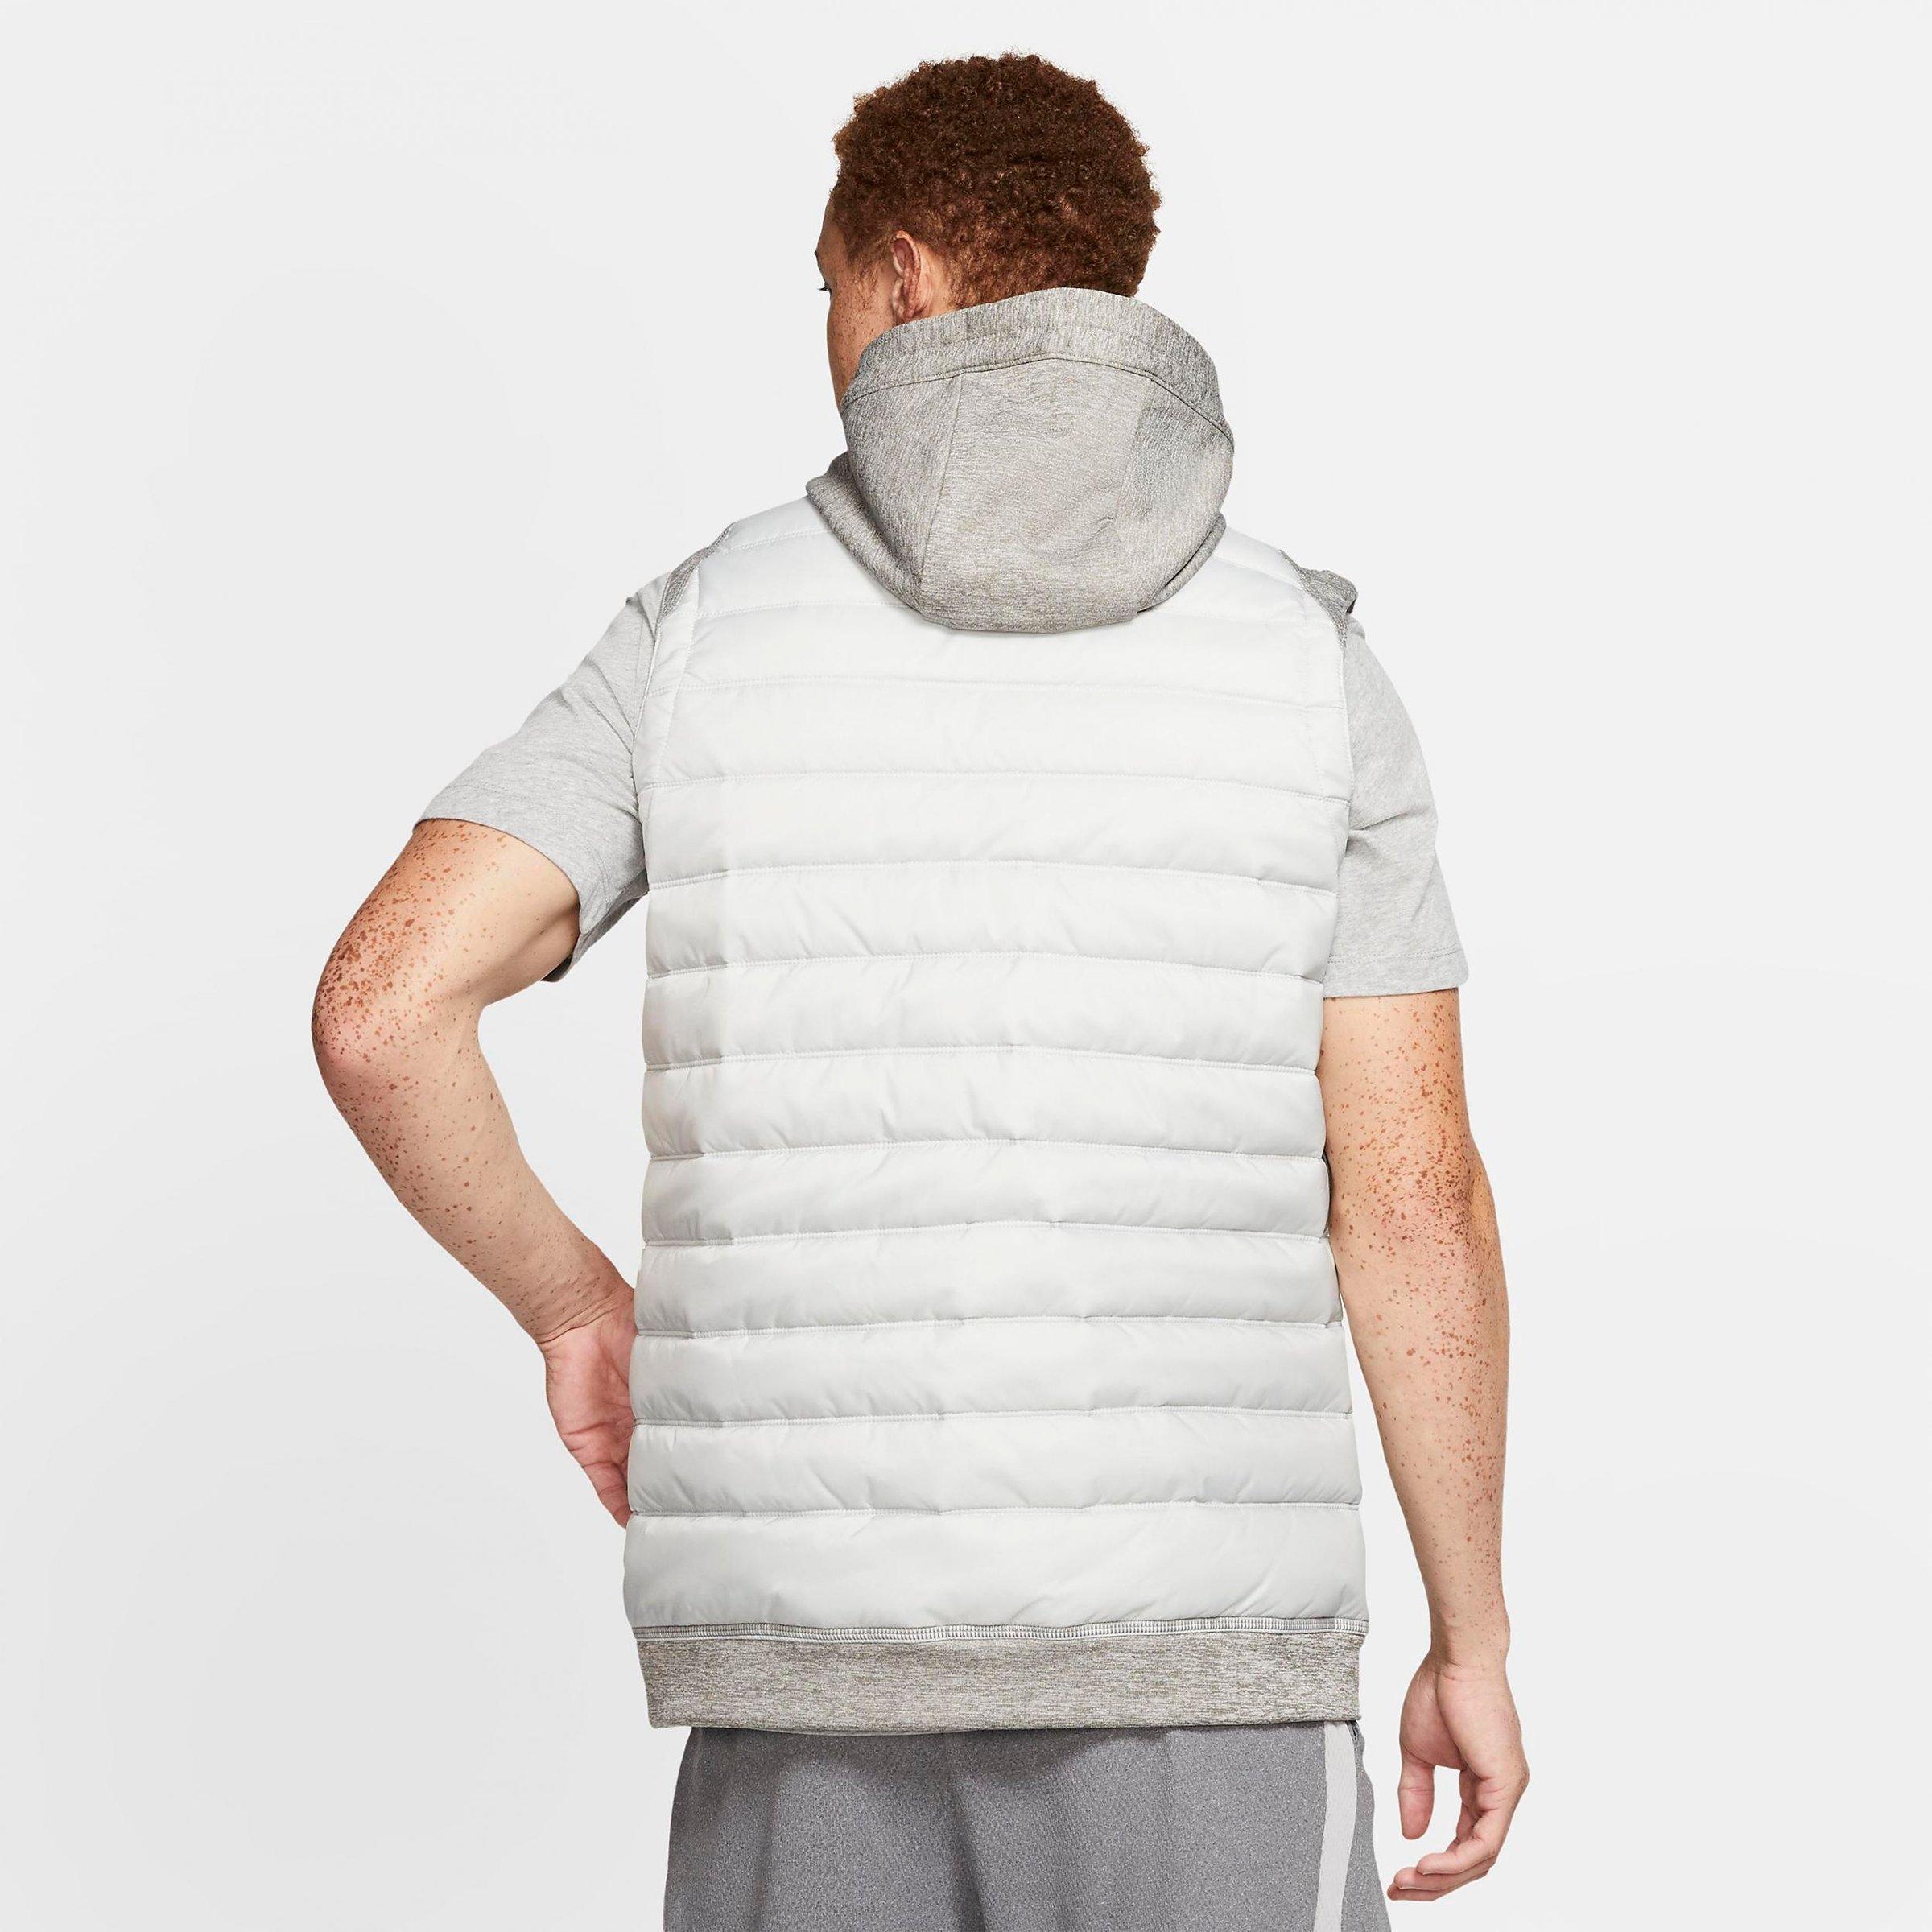 nike men's therma winterized vest